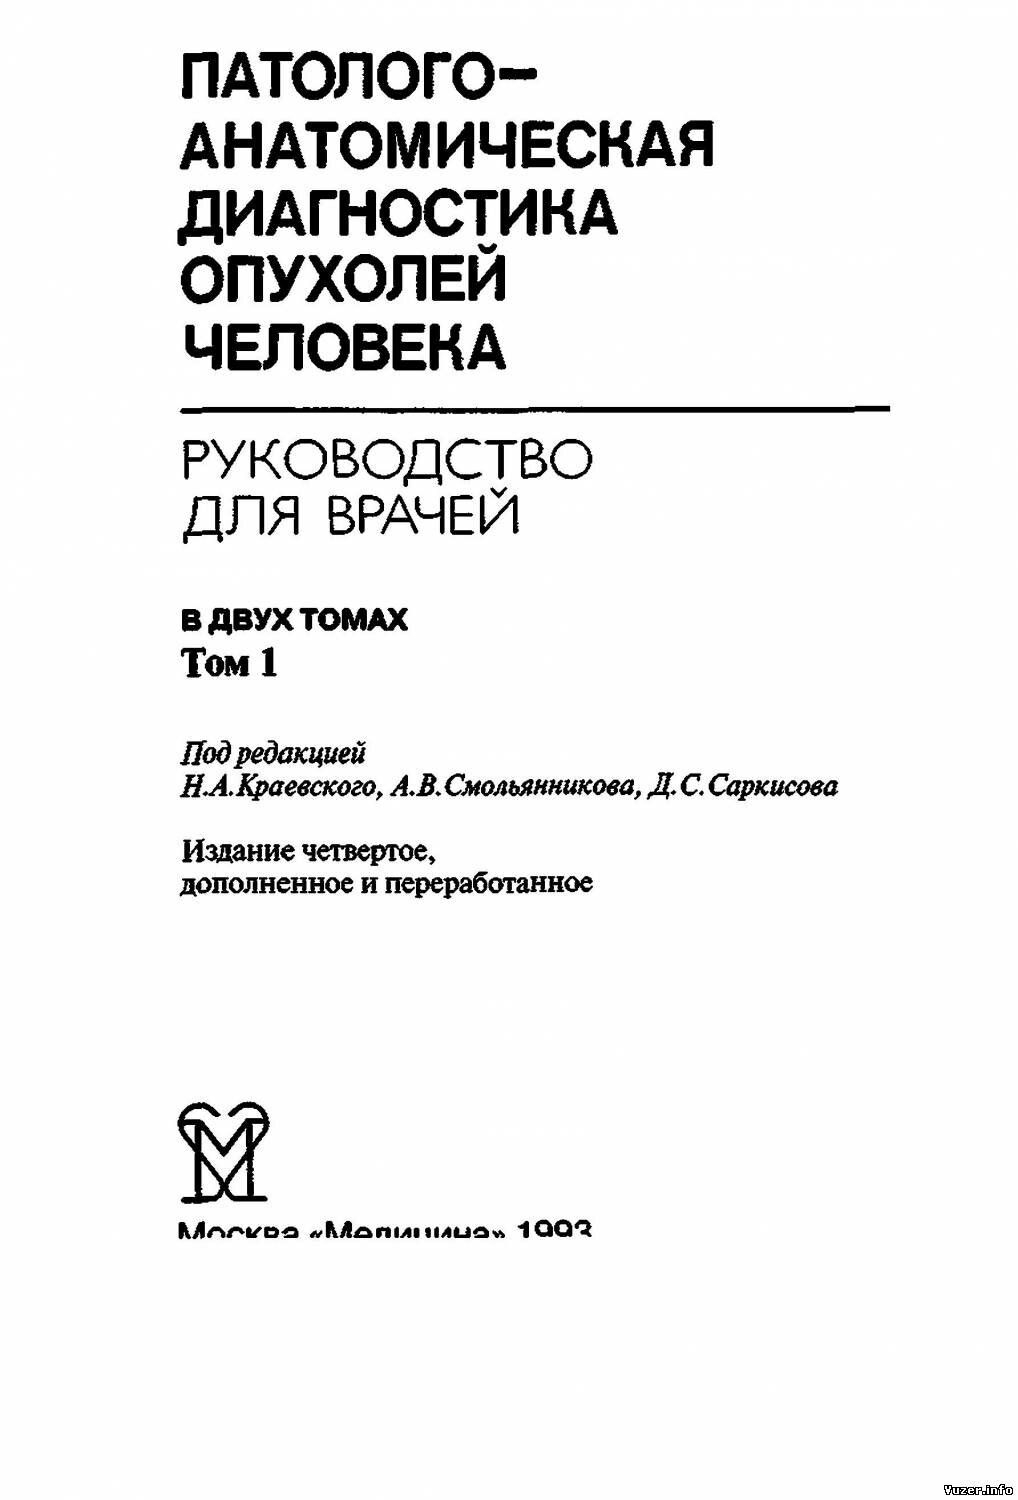 Патологоанатомическая диагностика опухолей человека: Том 1, Краевский Н.А. Смольянникова А.В., 1993 г.